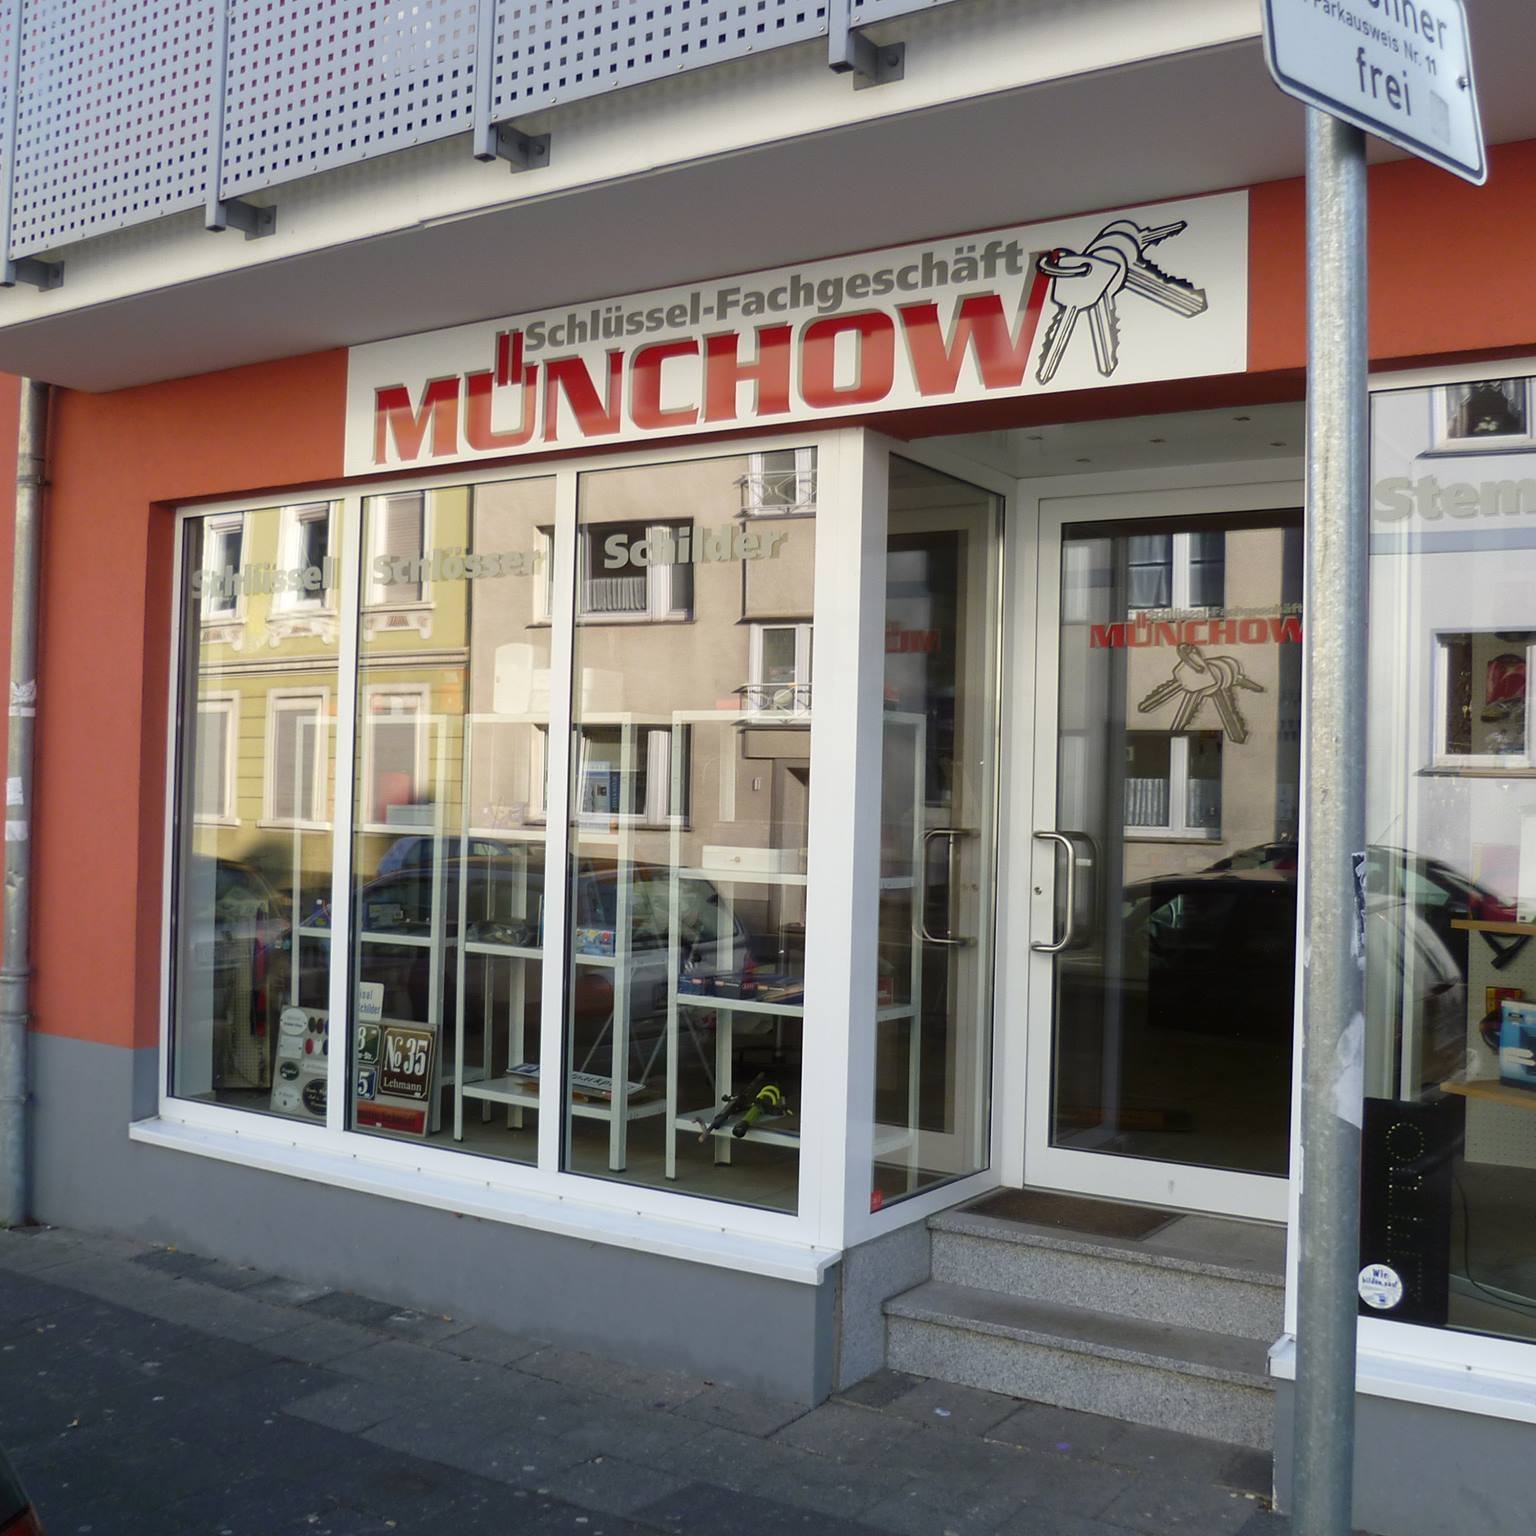 Bild 2 Schlüsselfachgeschäft Münchow in Paderborn